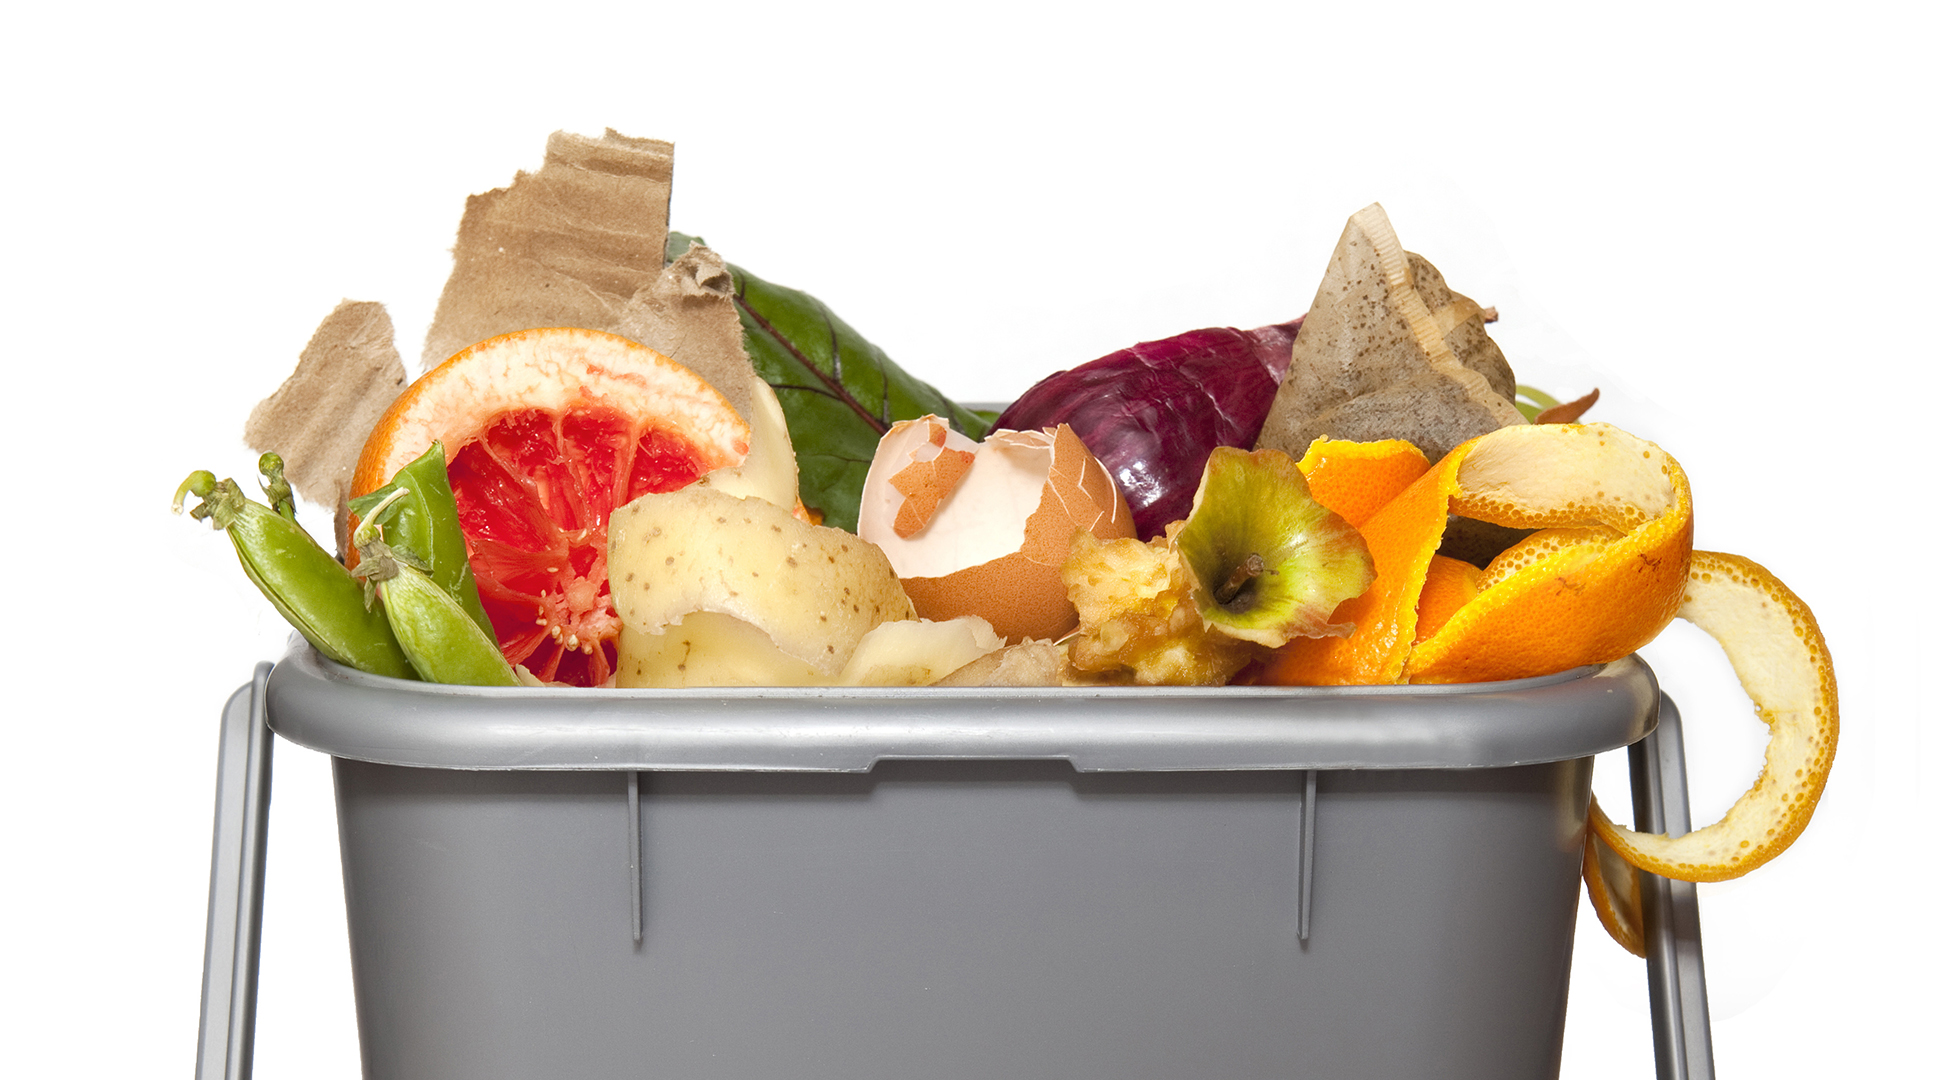 Managing food waste